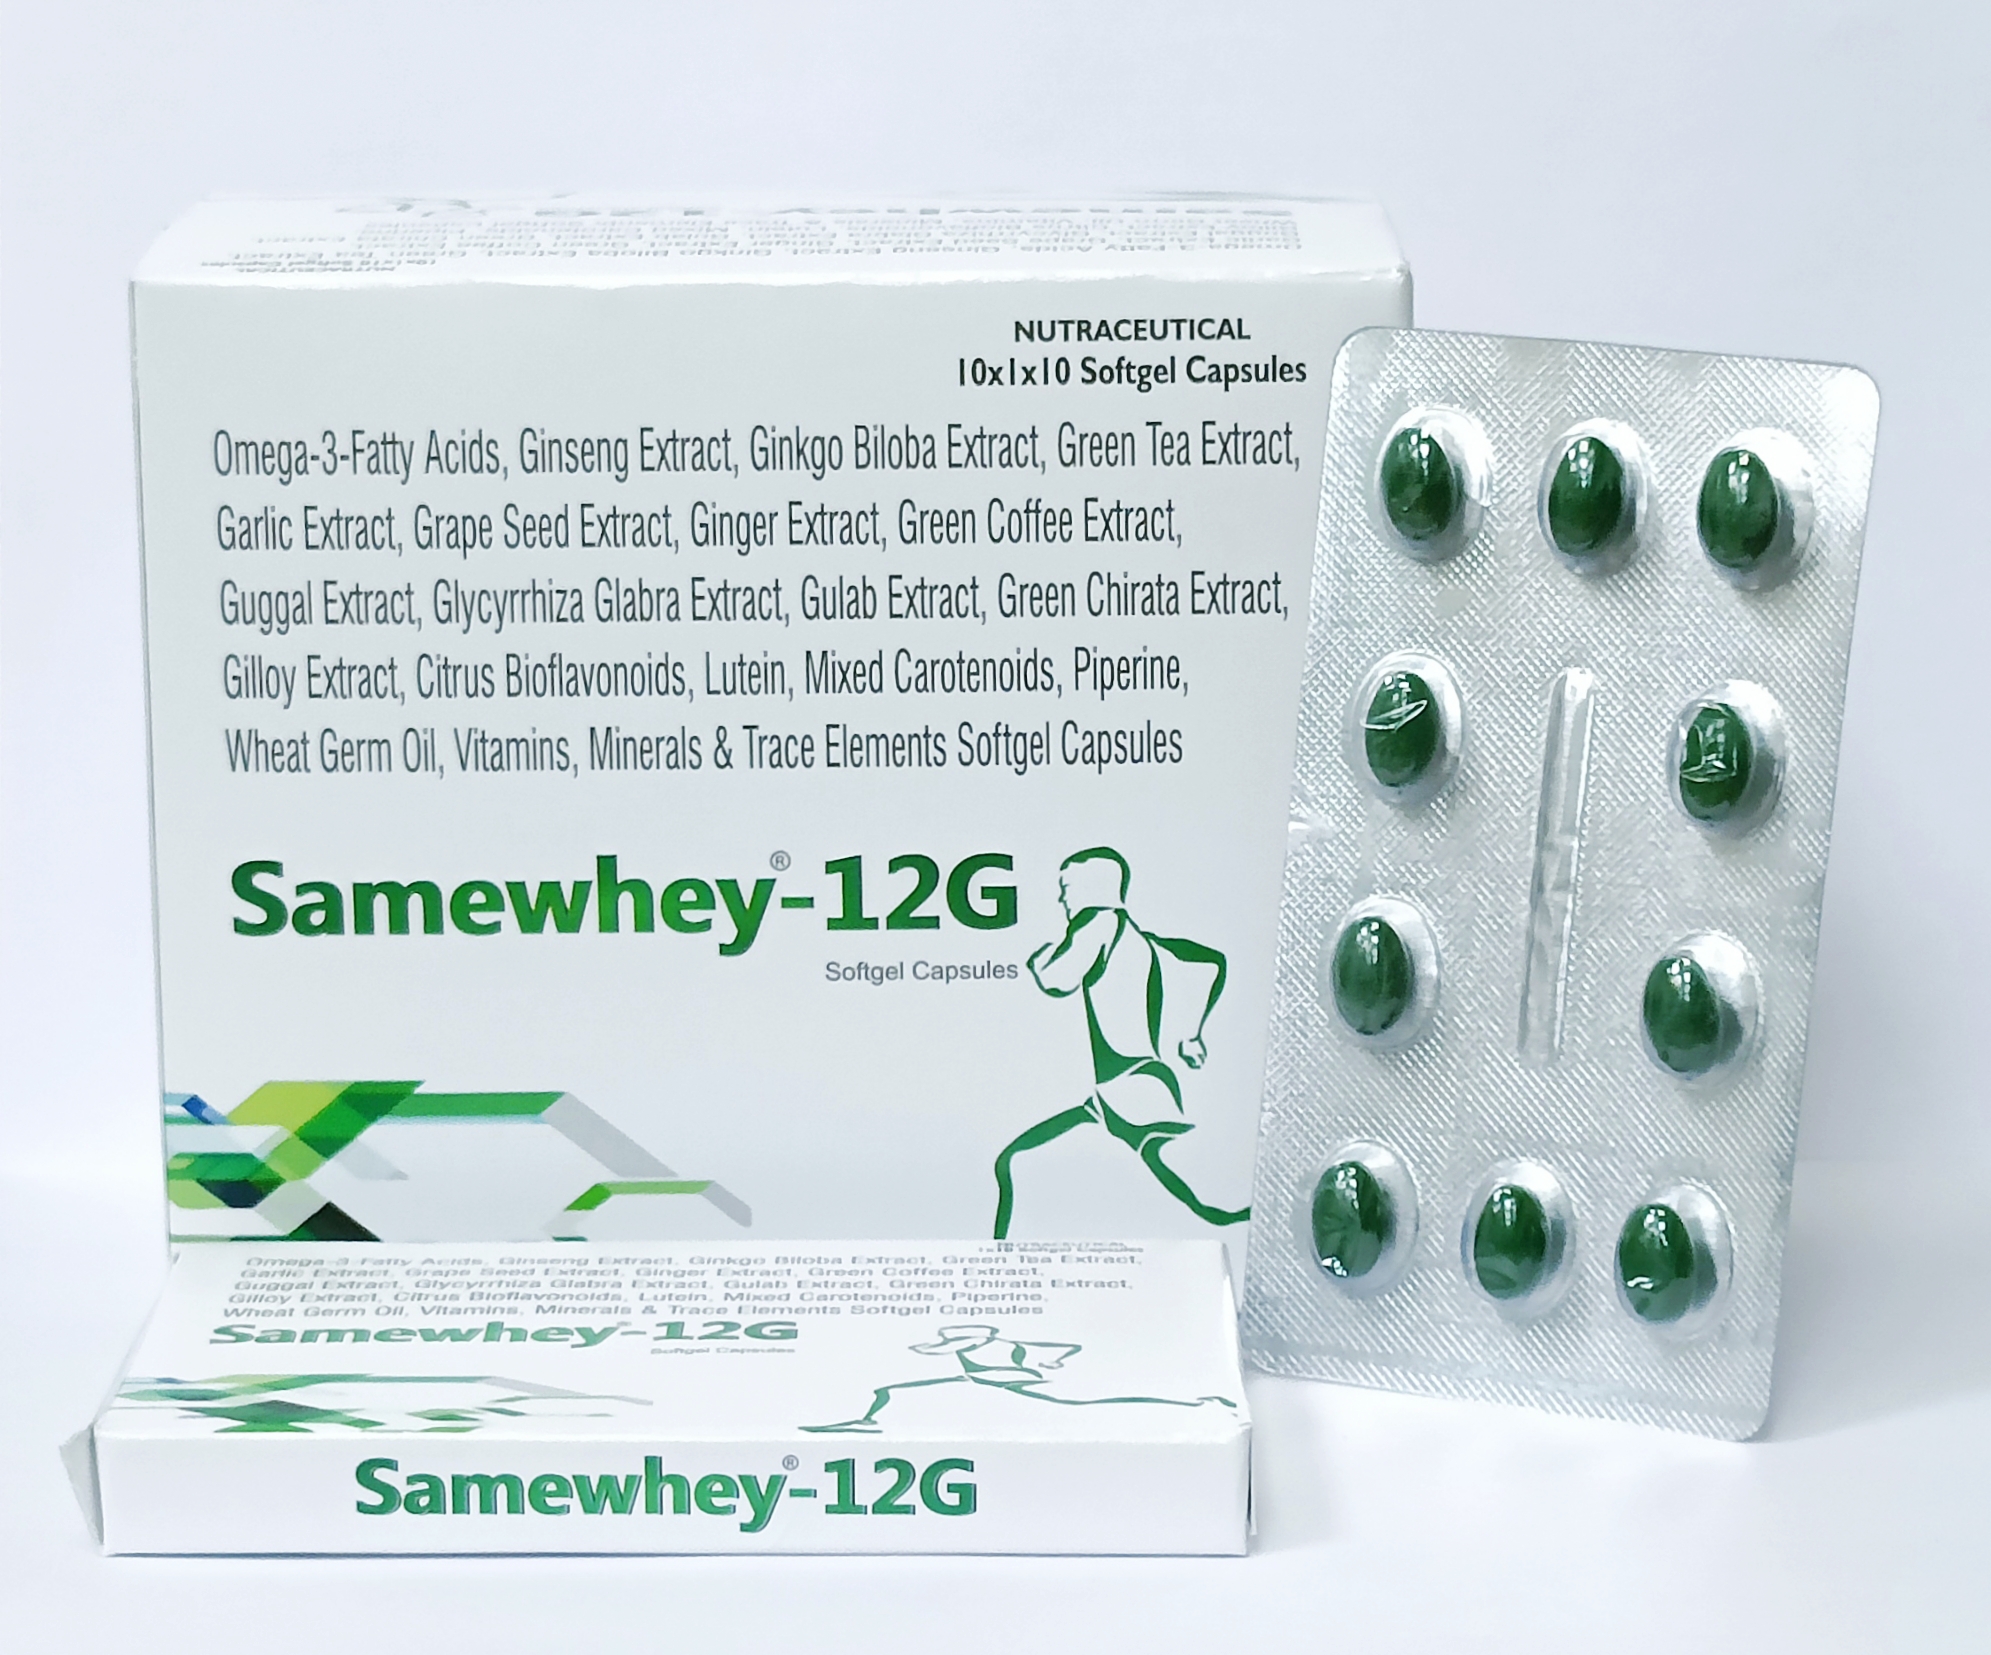 Samewhey-12G